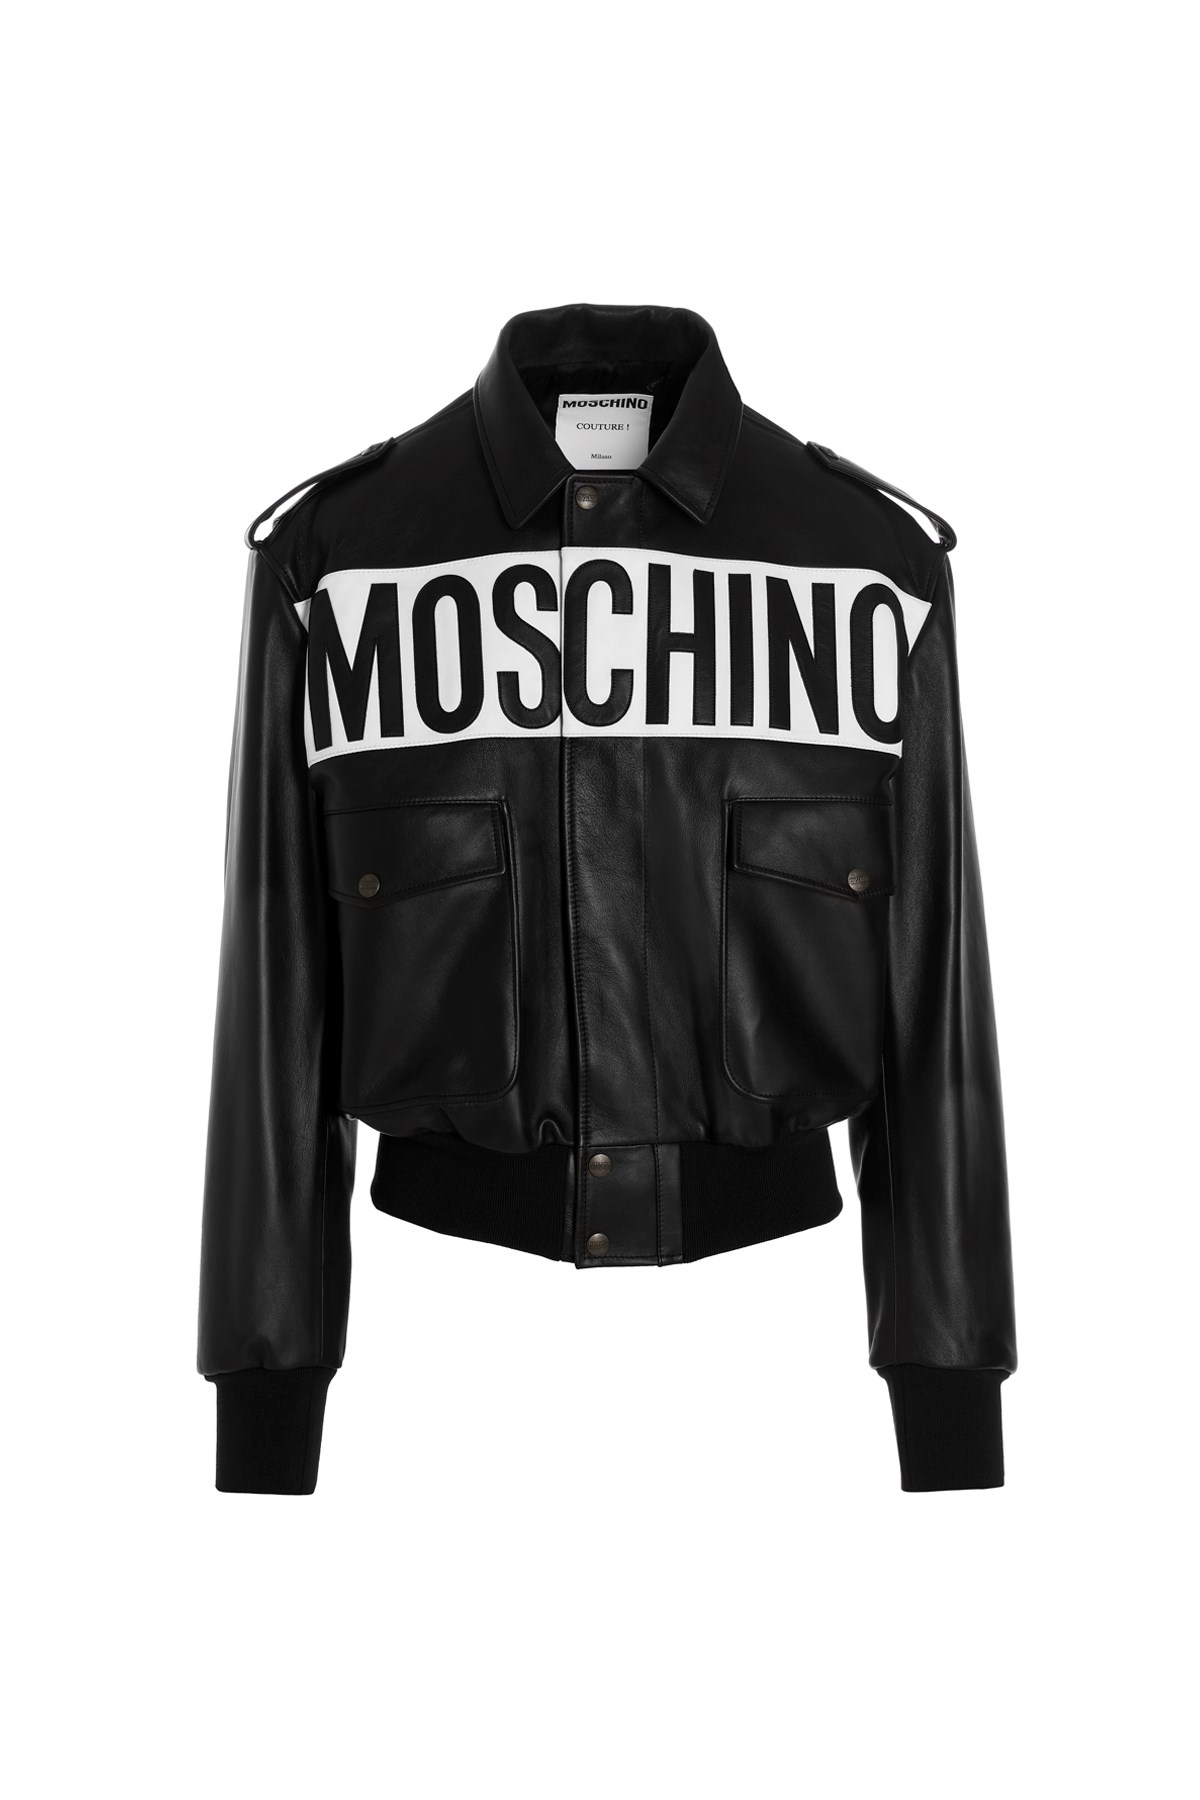 MOSCHINO Logo Leather Bomber Jacket